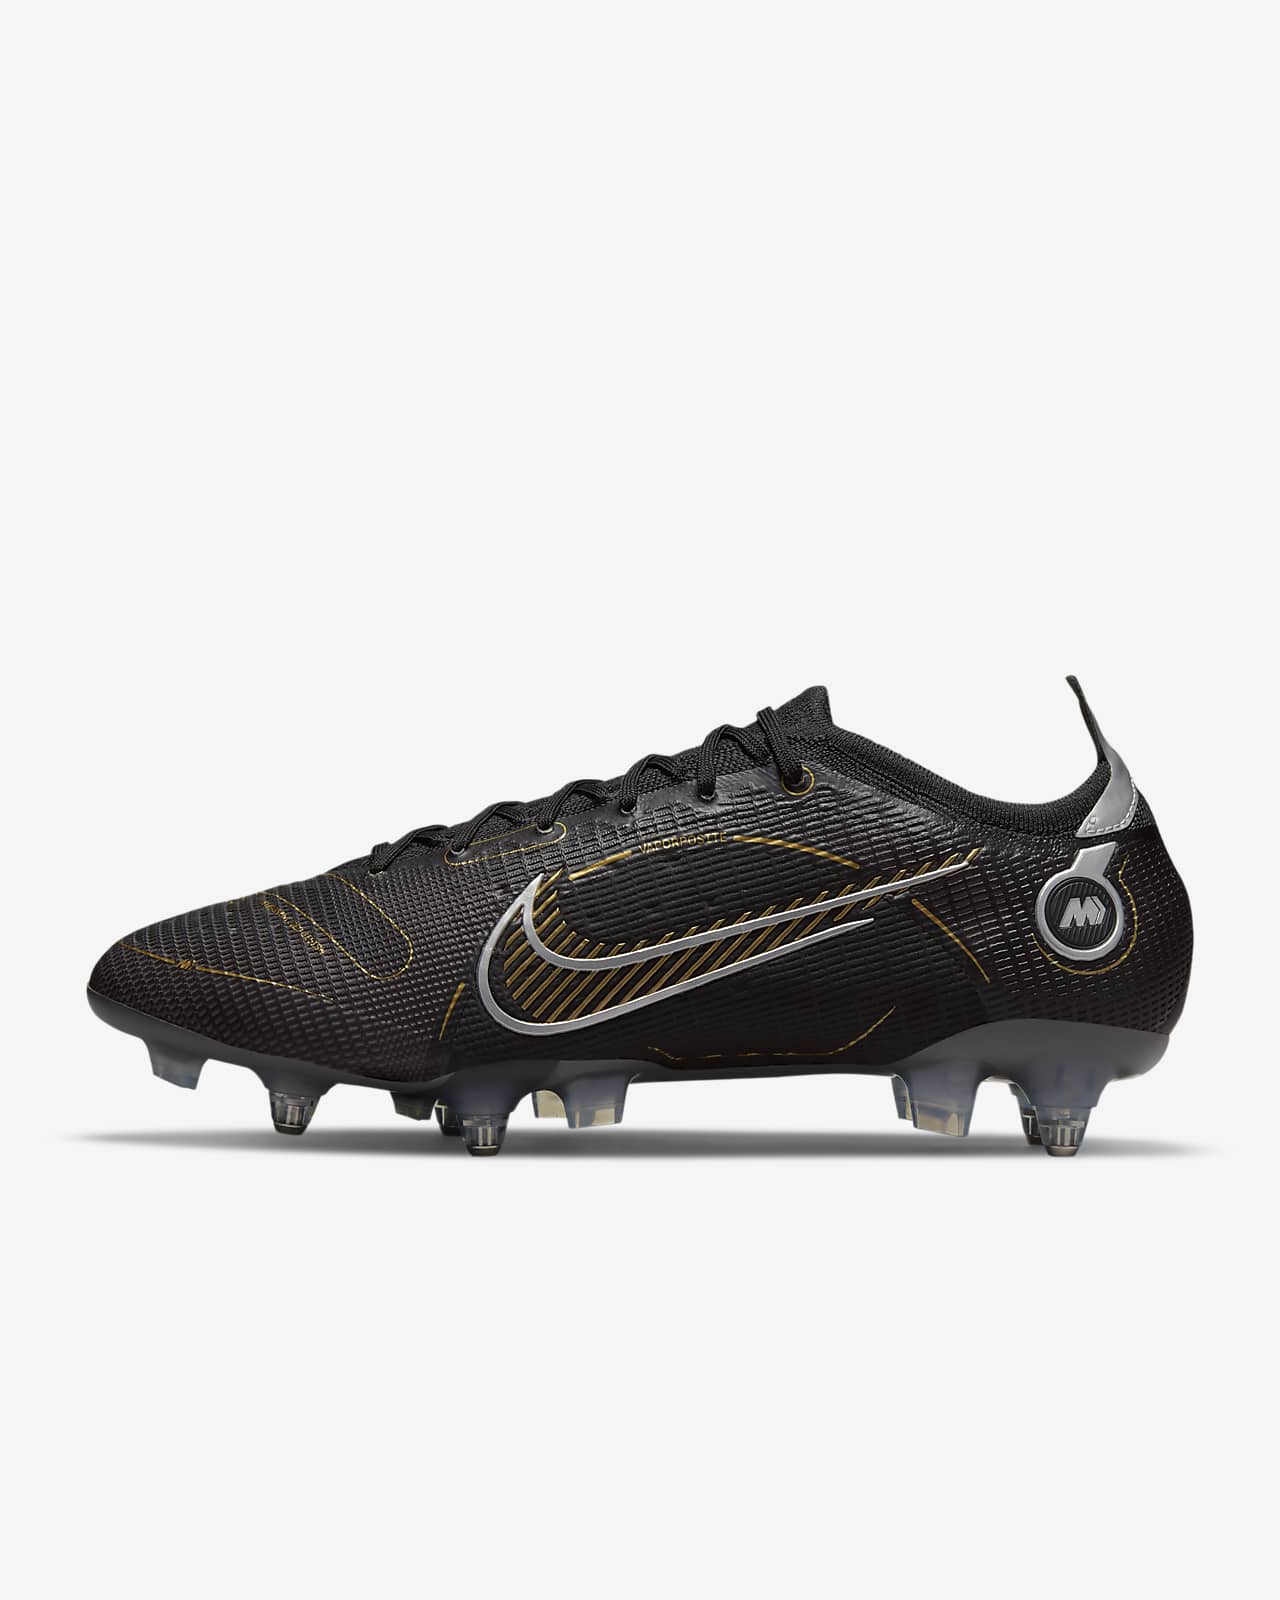 Ποδοσφαιρικά παπούτσια για μαλακές επιφάνειες Nike Mercurial Vapor 14 Elite SG-PRO Anti-Clog Traction